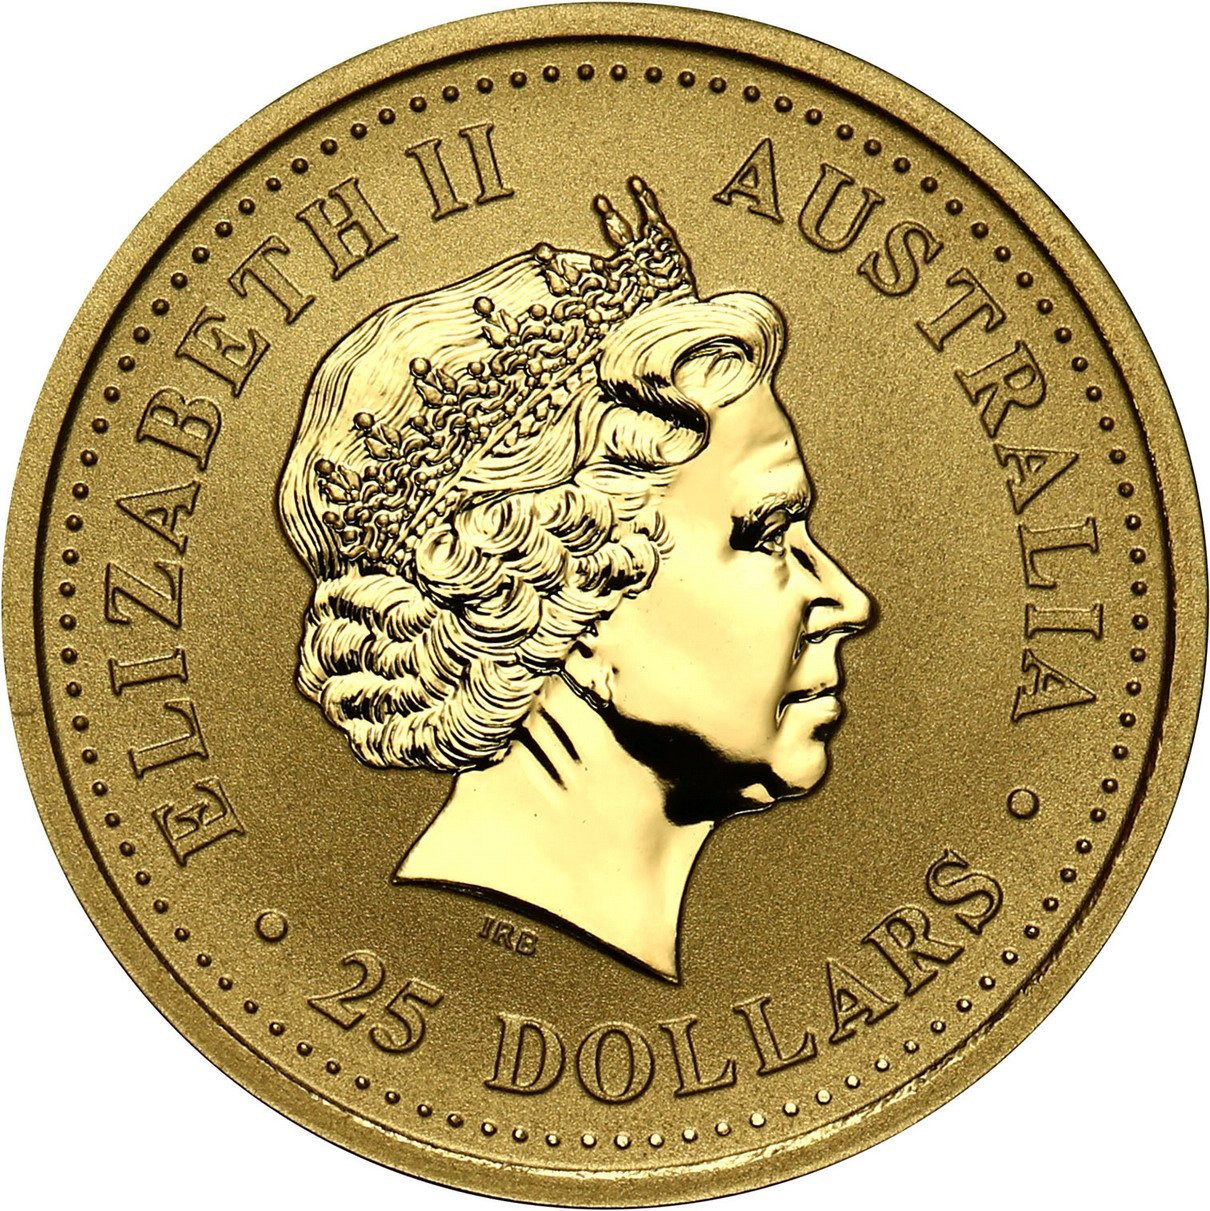 Australia. 25 dolarów 2002 Kangury - 1/4 uncji złota